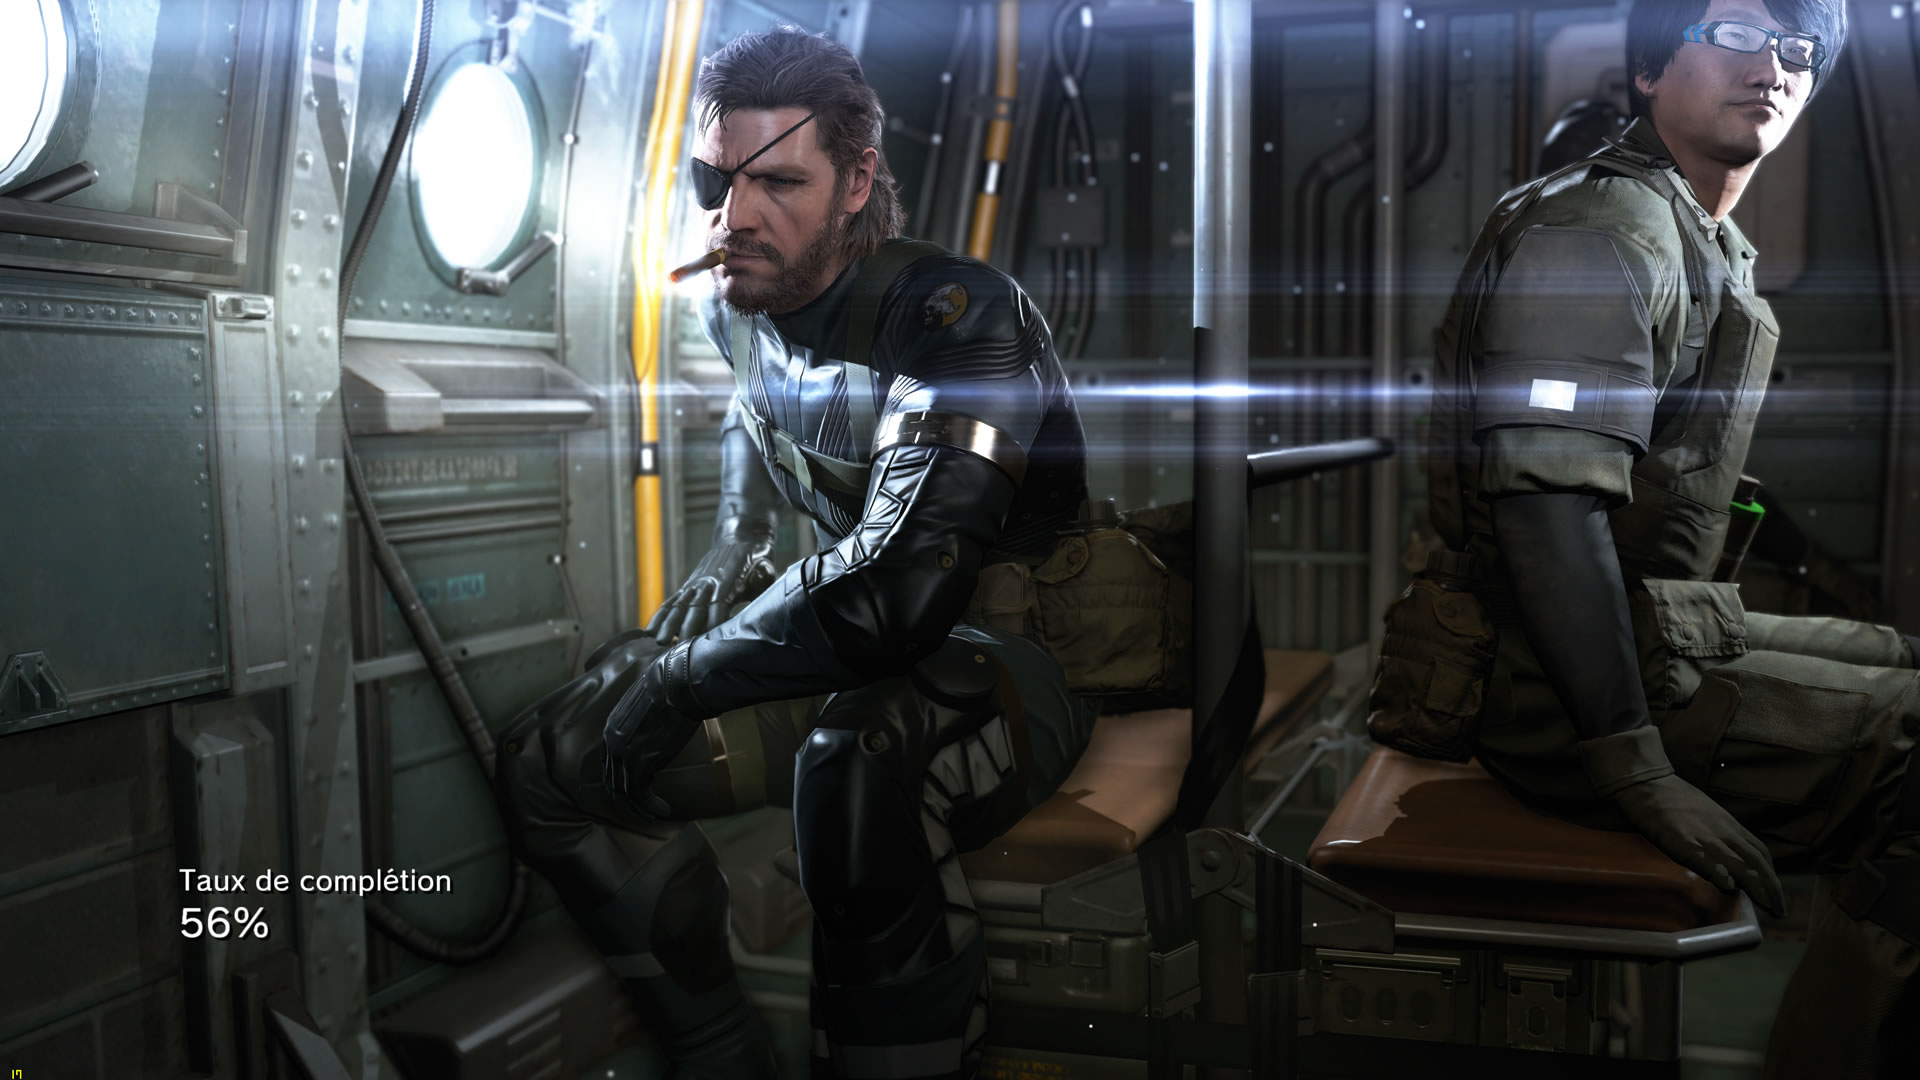 Une avalanche d'images de Metal Gear Solid V : Ground Zeroes sur PC